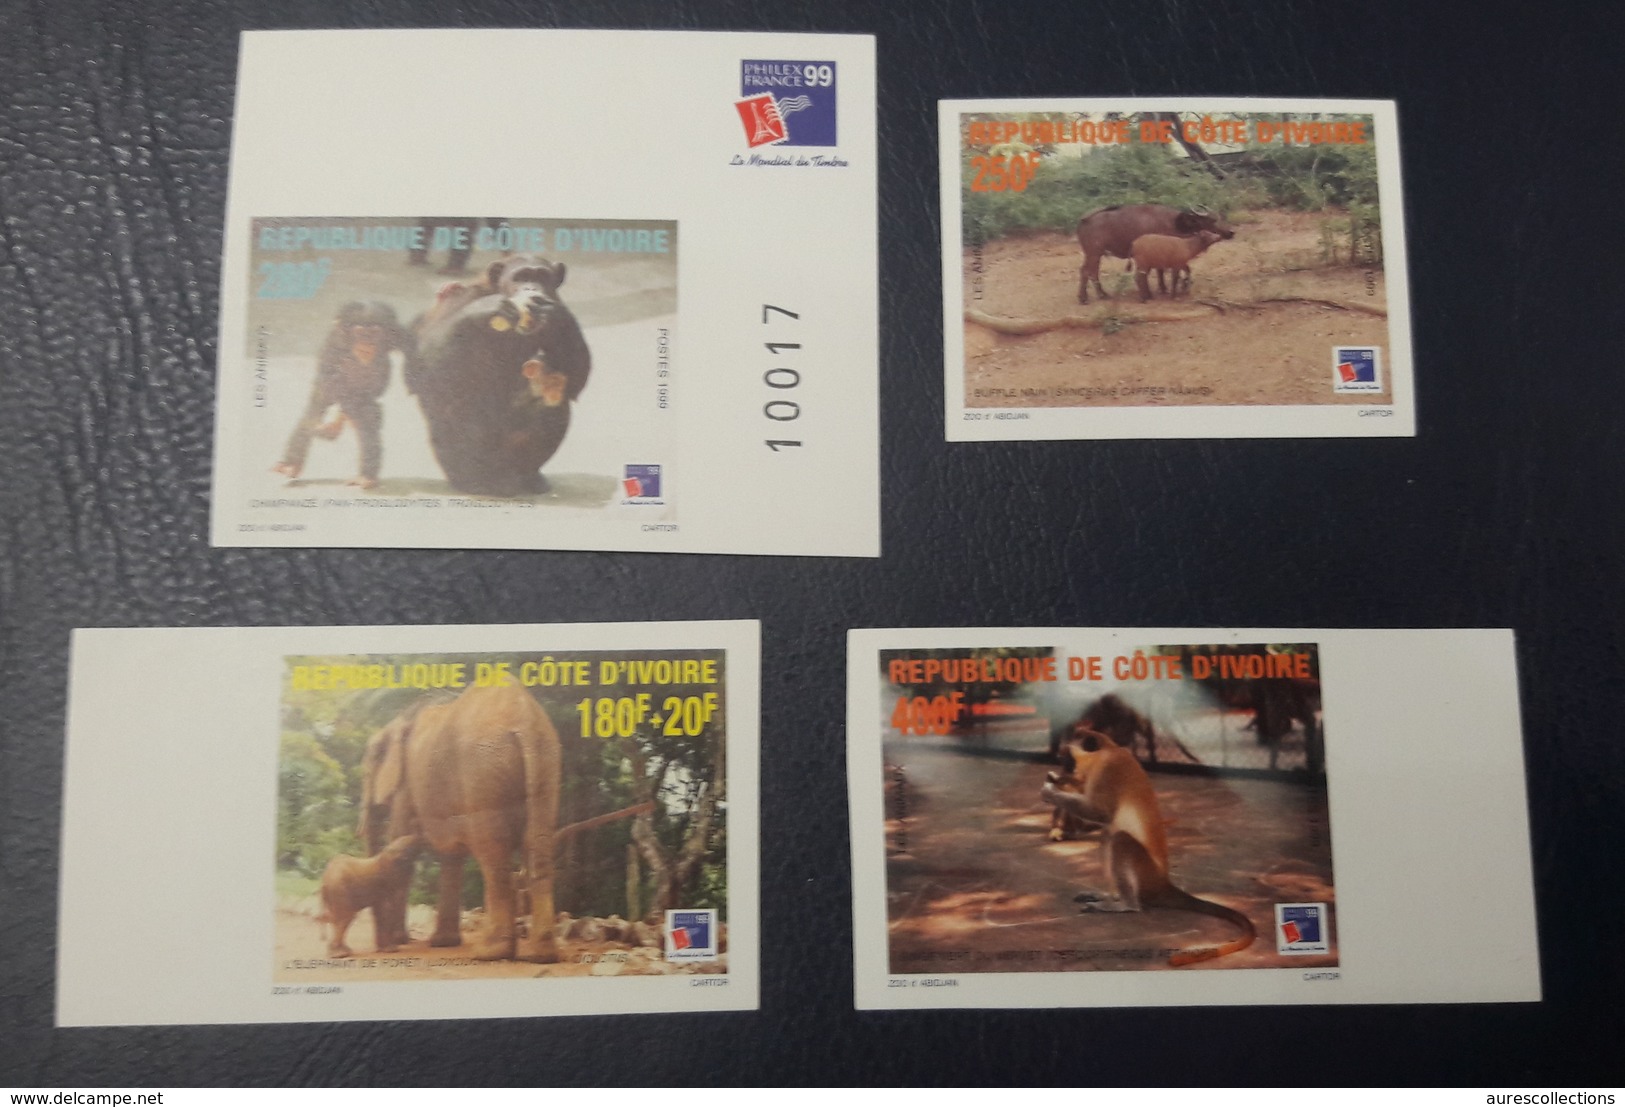 COTE D'IVOIRE IVORY COAST 1999 - IMPERF NON DENTELE ND - ANIMALS APES MONKEYS SINGES ELEPHANTS PHILEXAFRIQUE CHIMPANZE - Scimpanzé